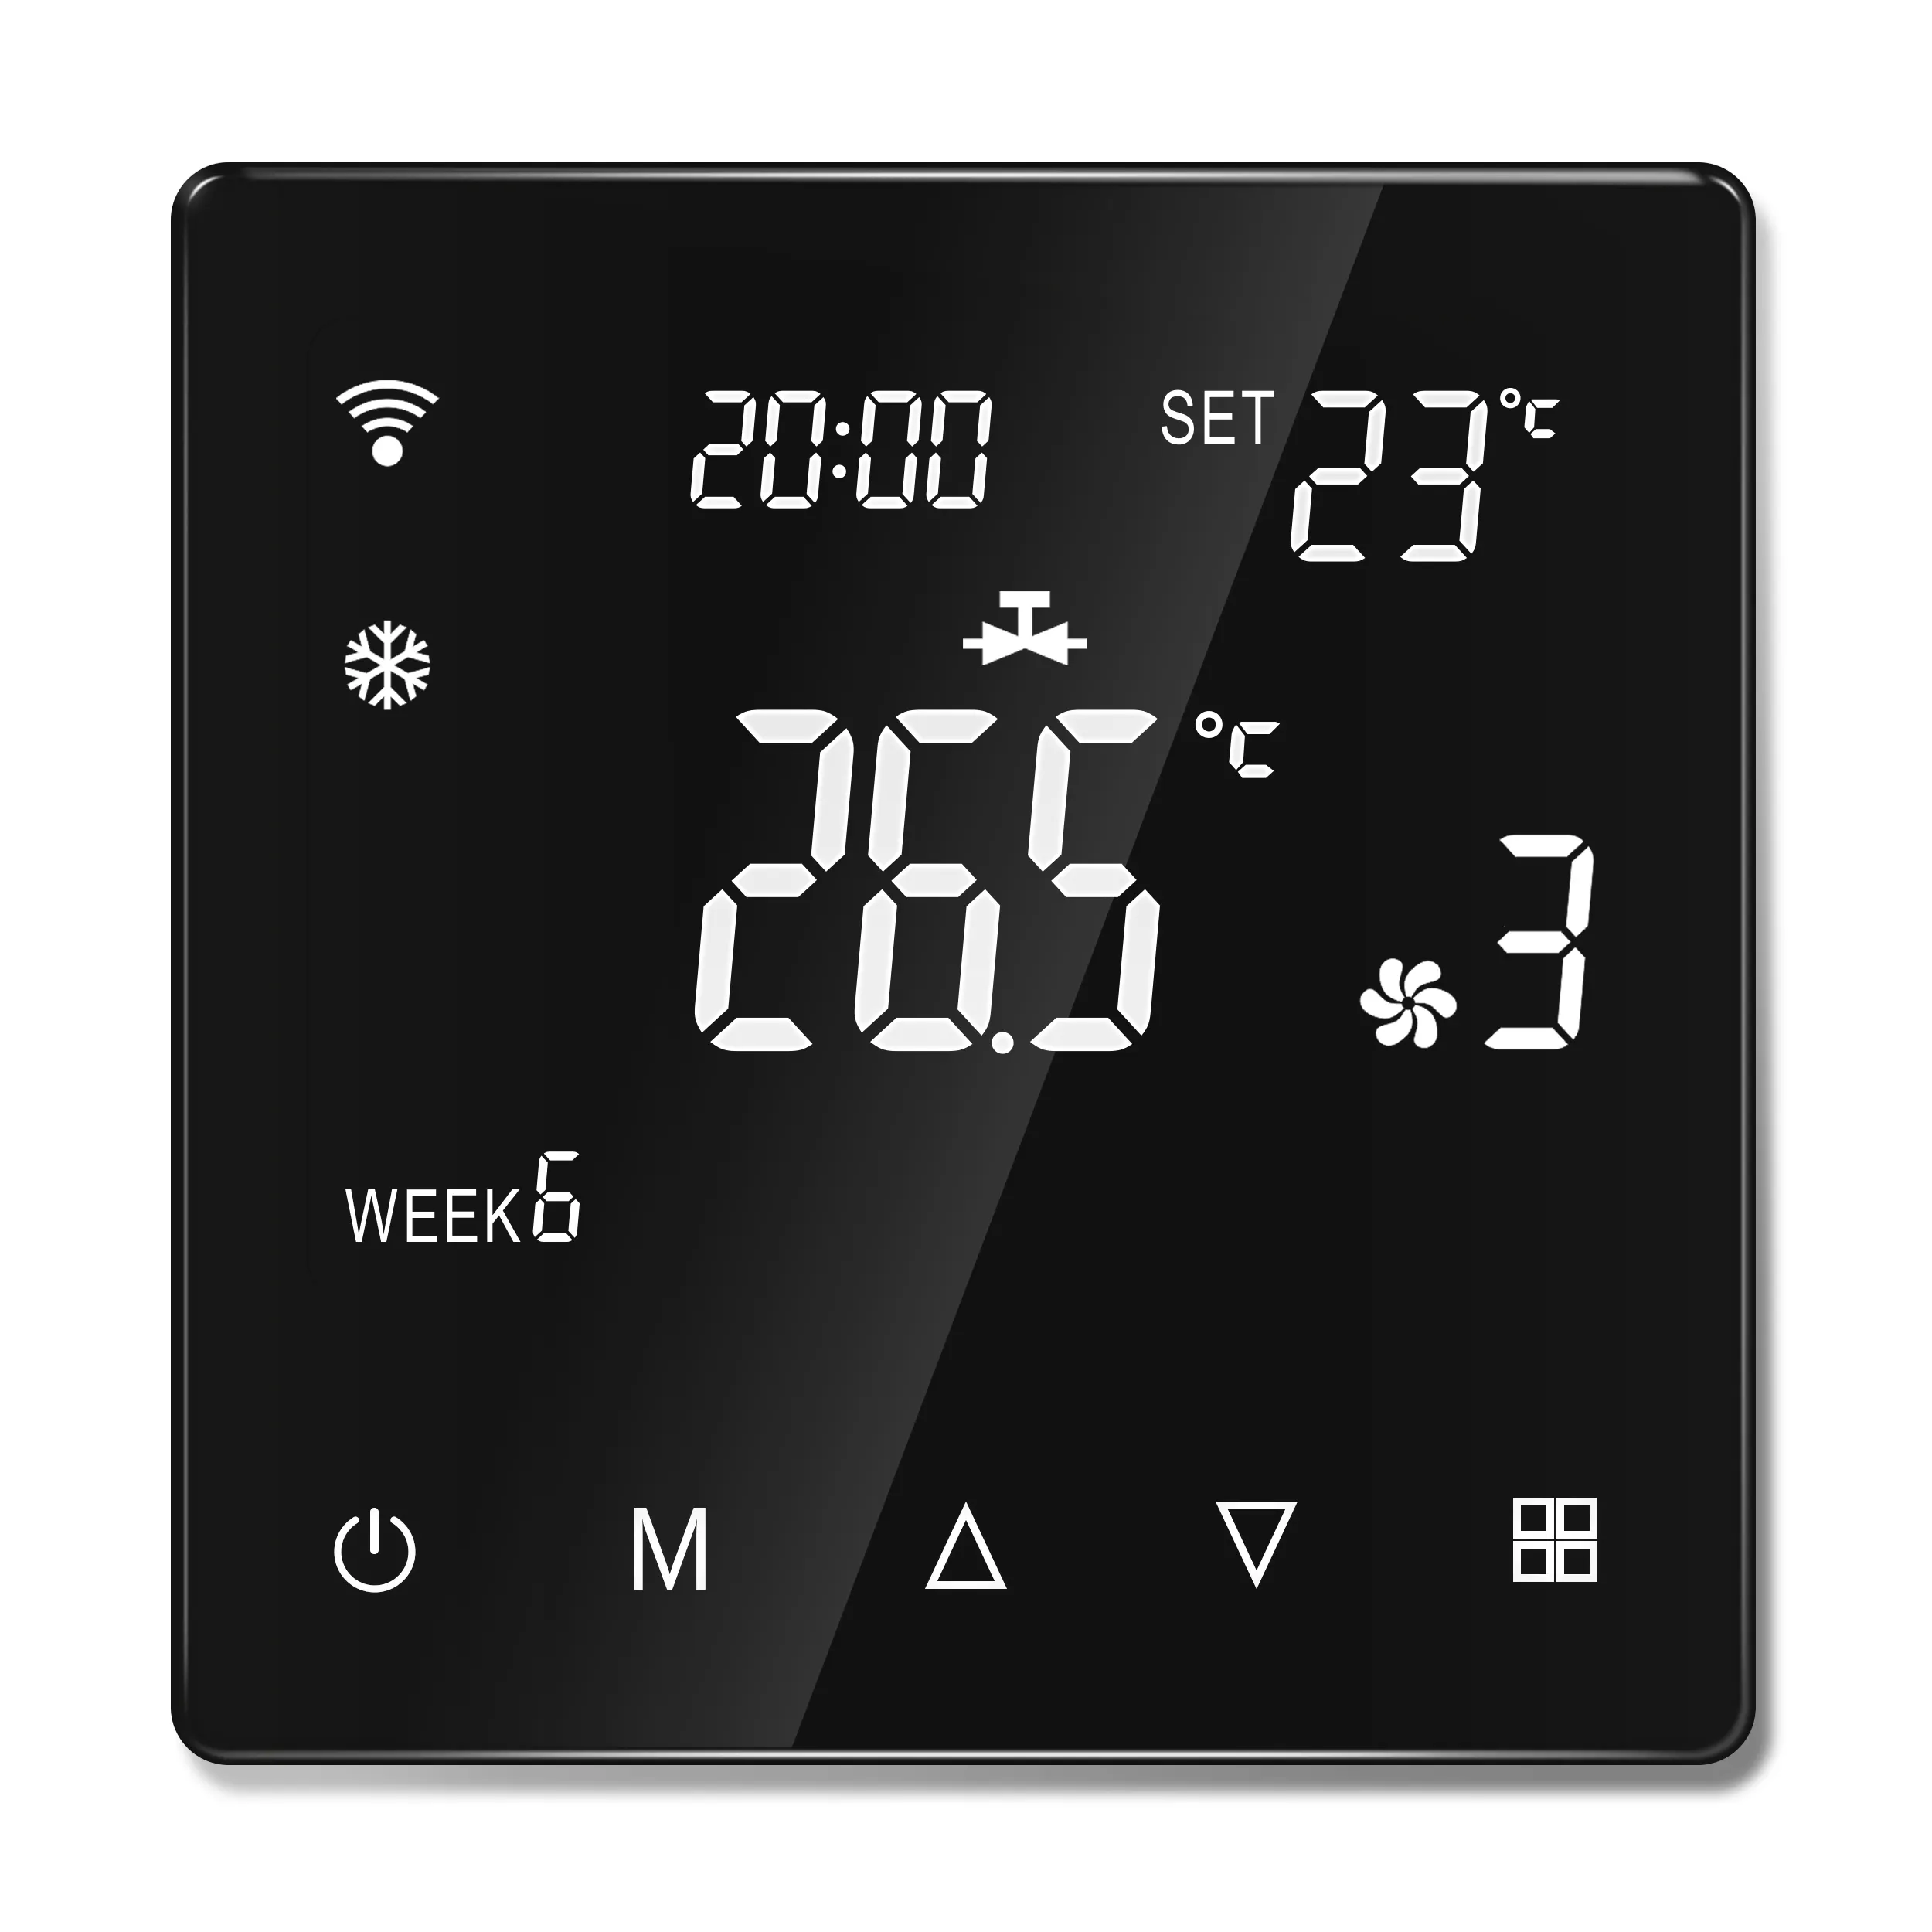 Inteligente elétrico wifi termostato programável lcd piso aquecimento temperatura ambiente controlador toque tuya app controle remoto